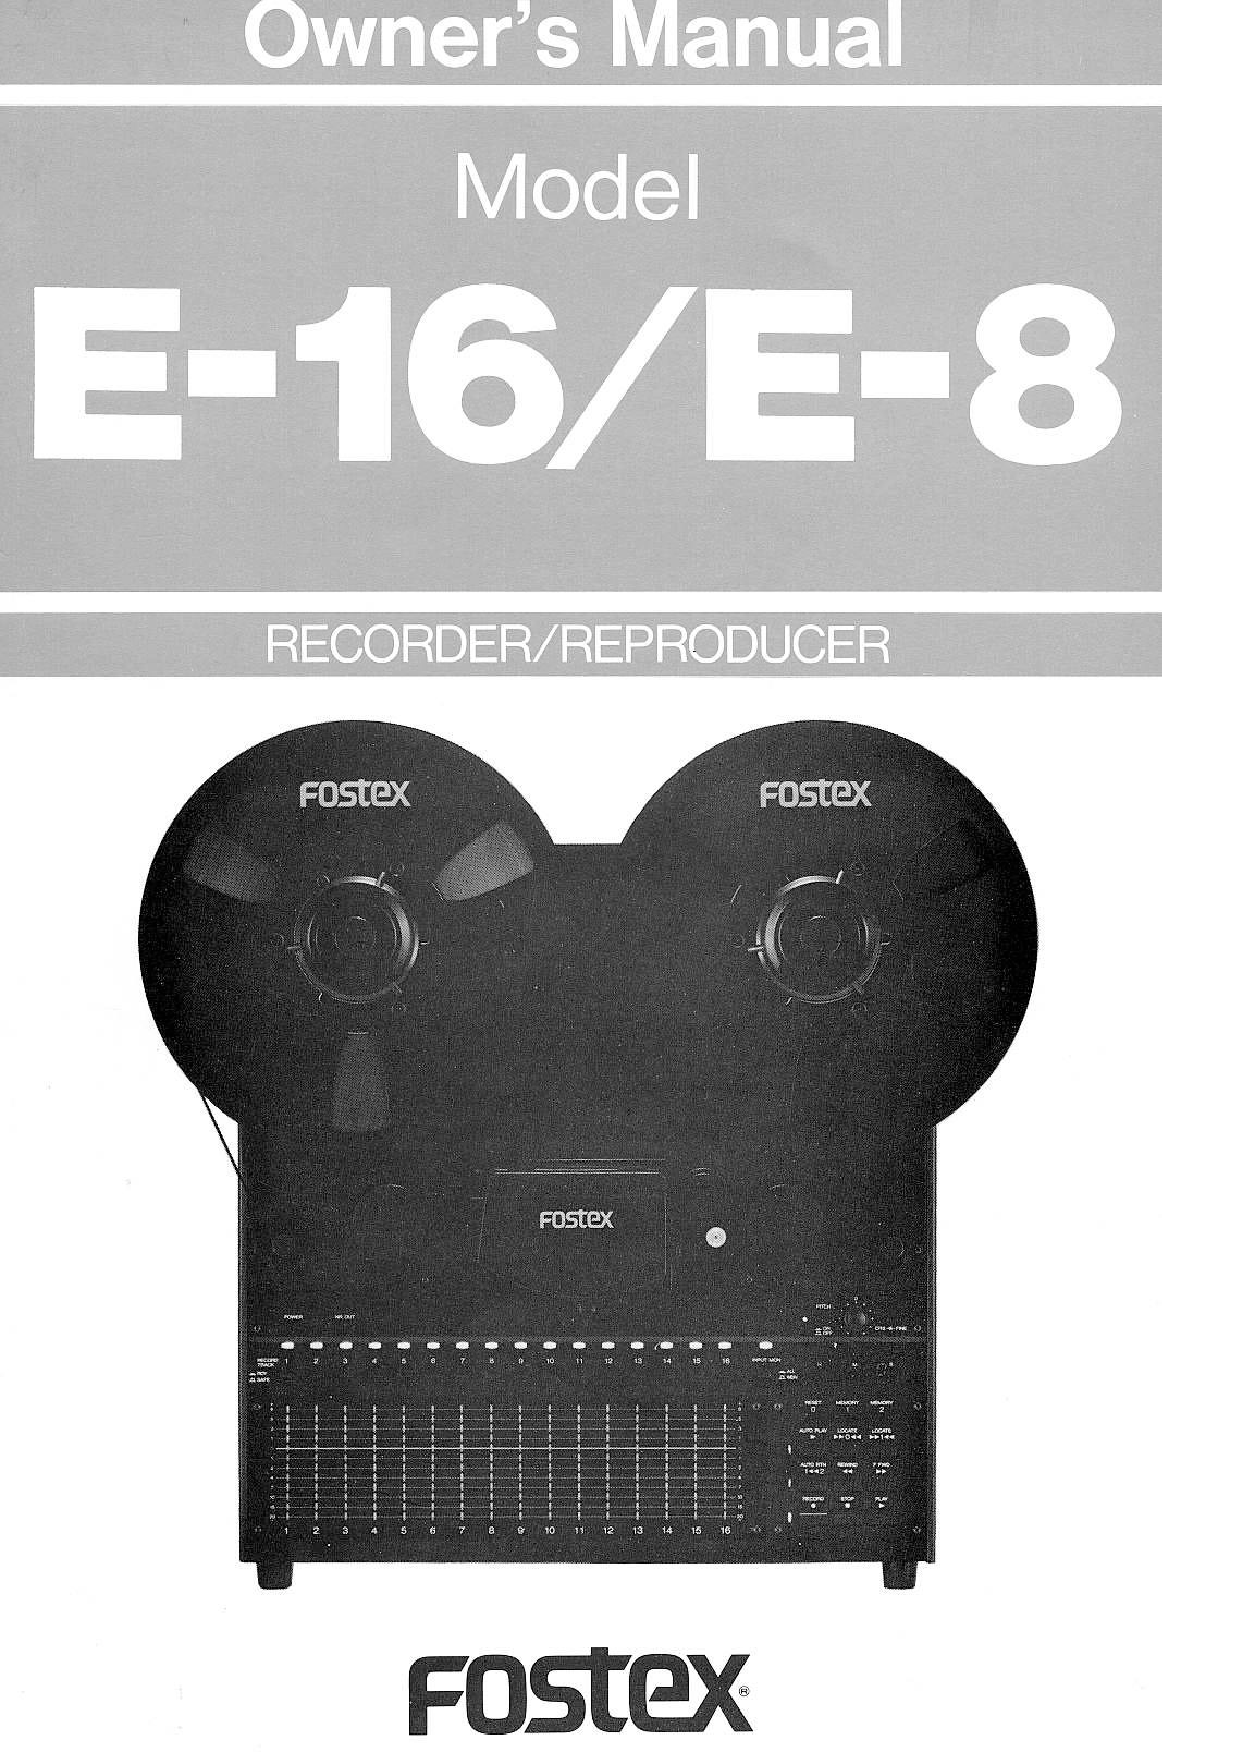 Fostex E-16, E-8 Owners Manual